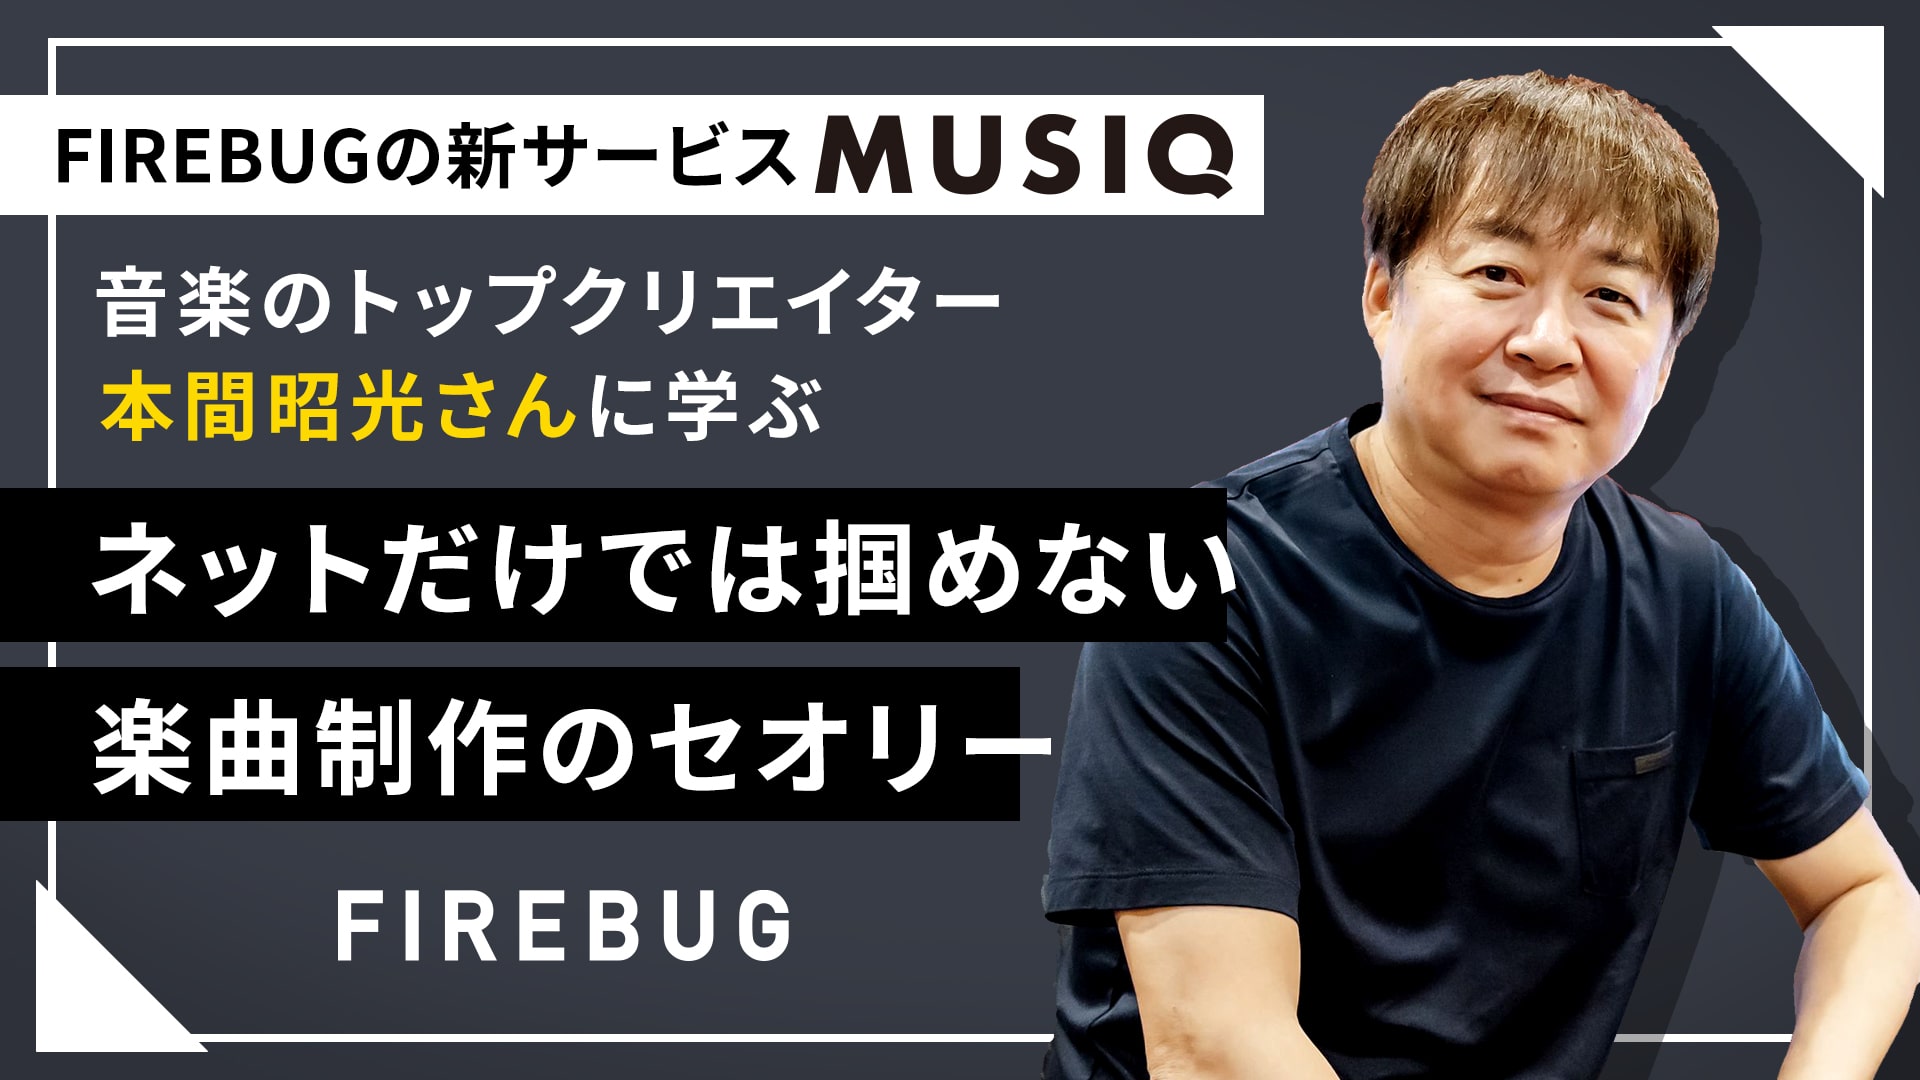 【note】FIREBUGの新サービス「MUSIQ」。音楽のトップクリエイター・本間昭光さんに学ぶ｜ネットだけでは掴めない楽曲制作のセオリー